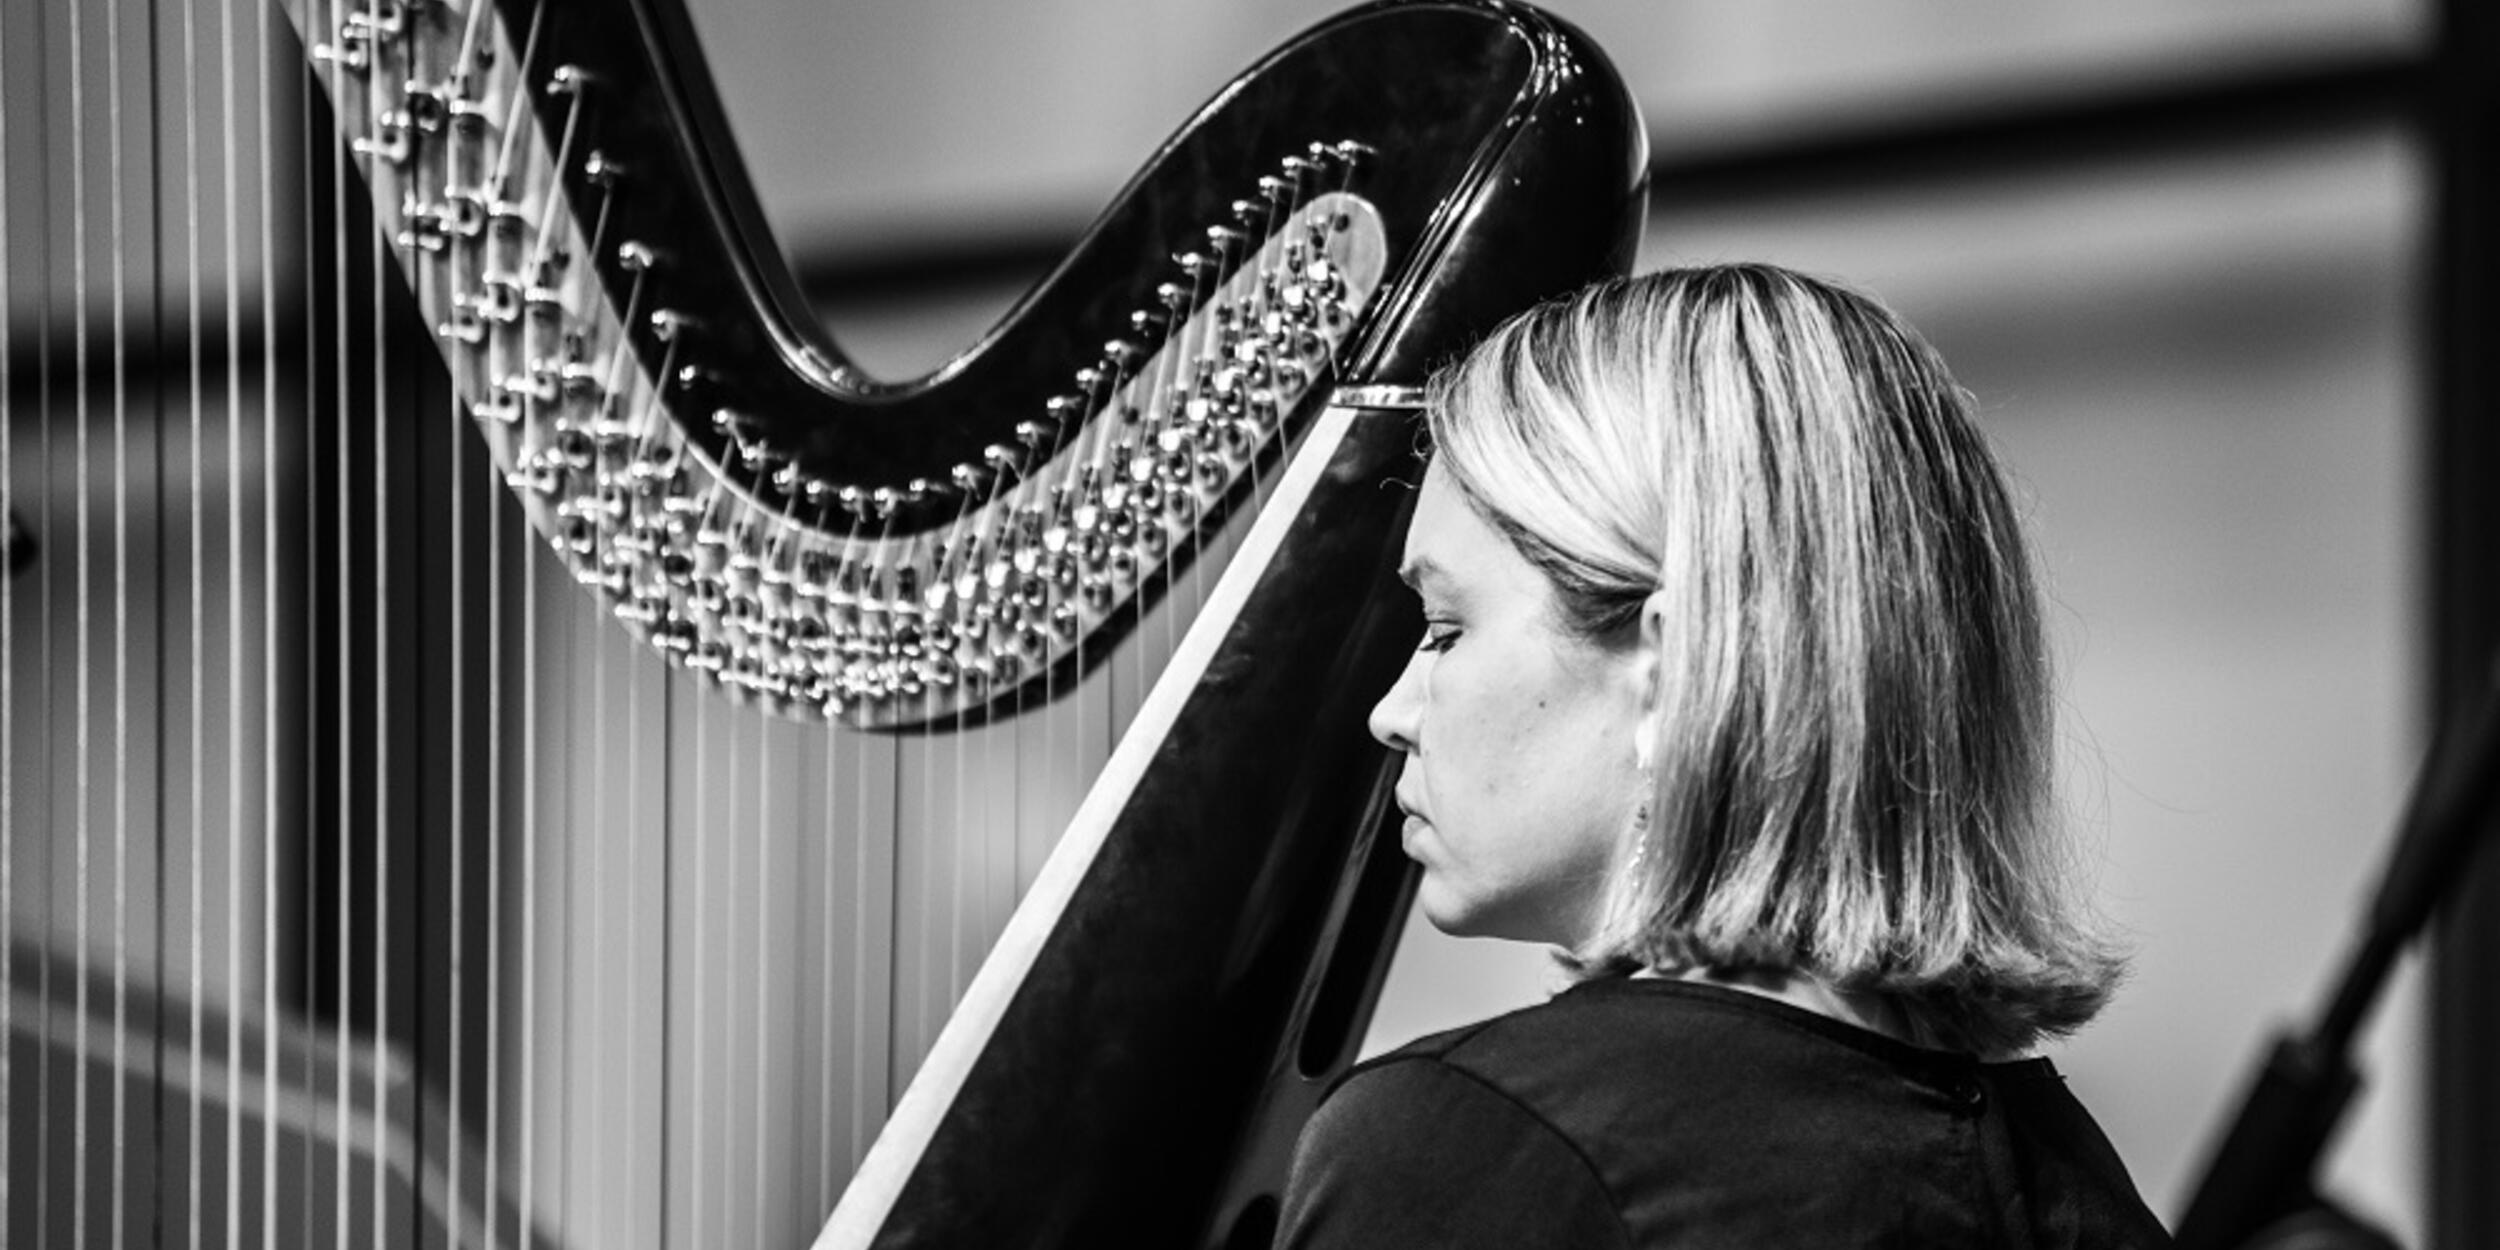 Bild schwarz-weiß, Details von einer Frau an einer Harfe | © Fabian Schober